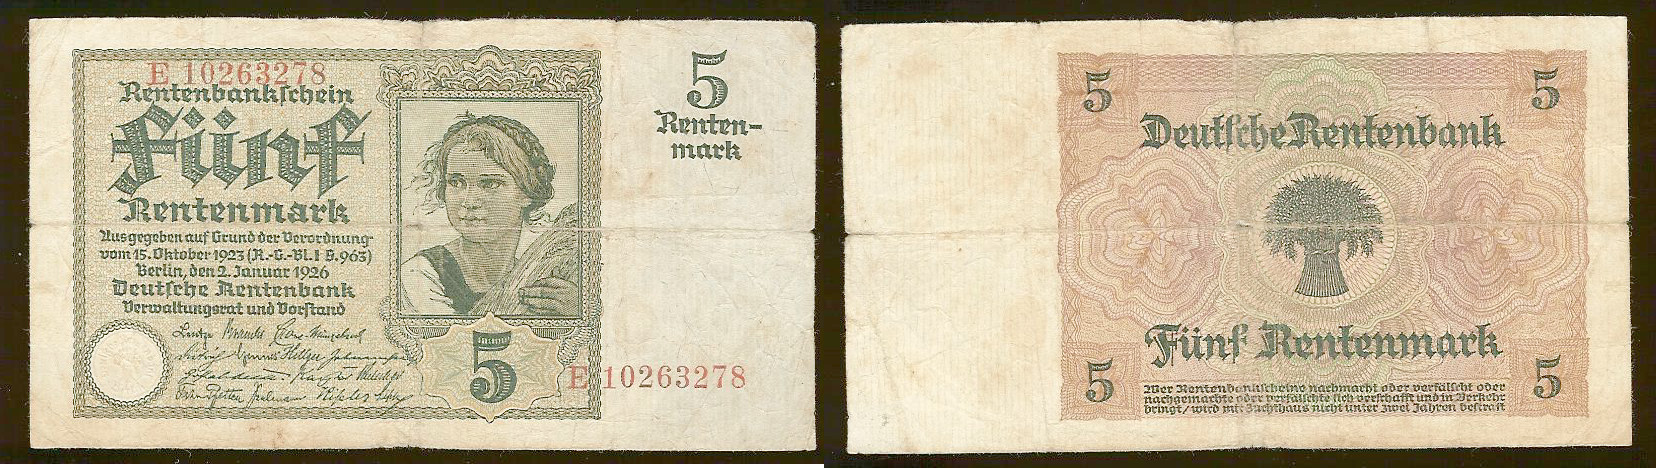 Germany 5 rentenmark 1926 F